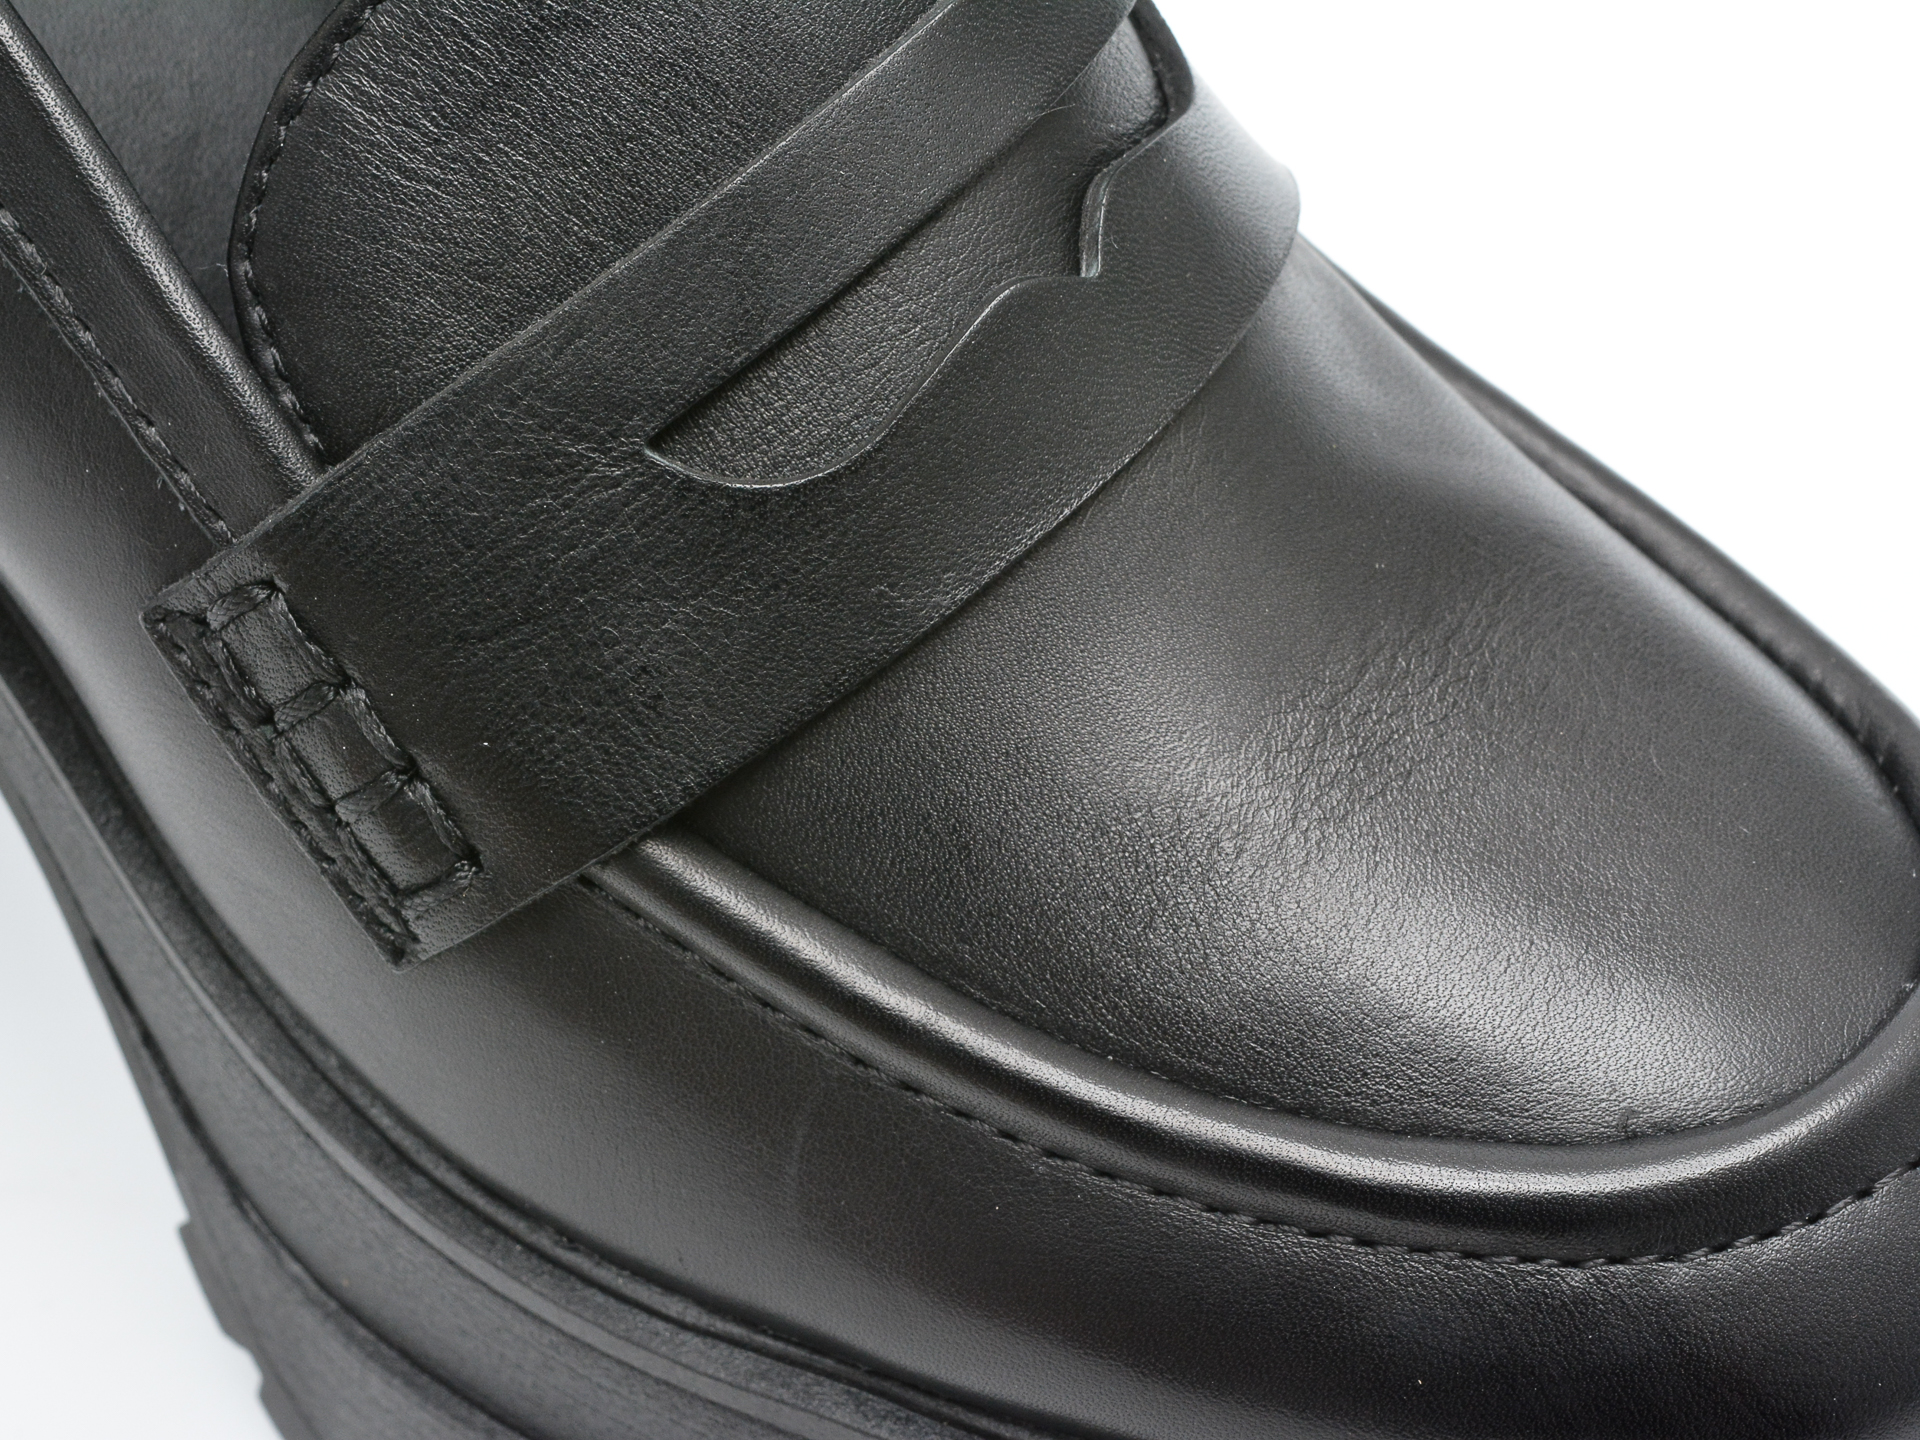 Poze Pantofi ALDO negri, BIGSOUL001, din piele naturala Tezyo